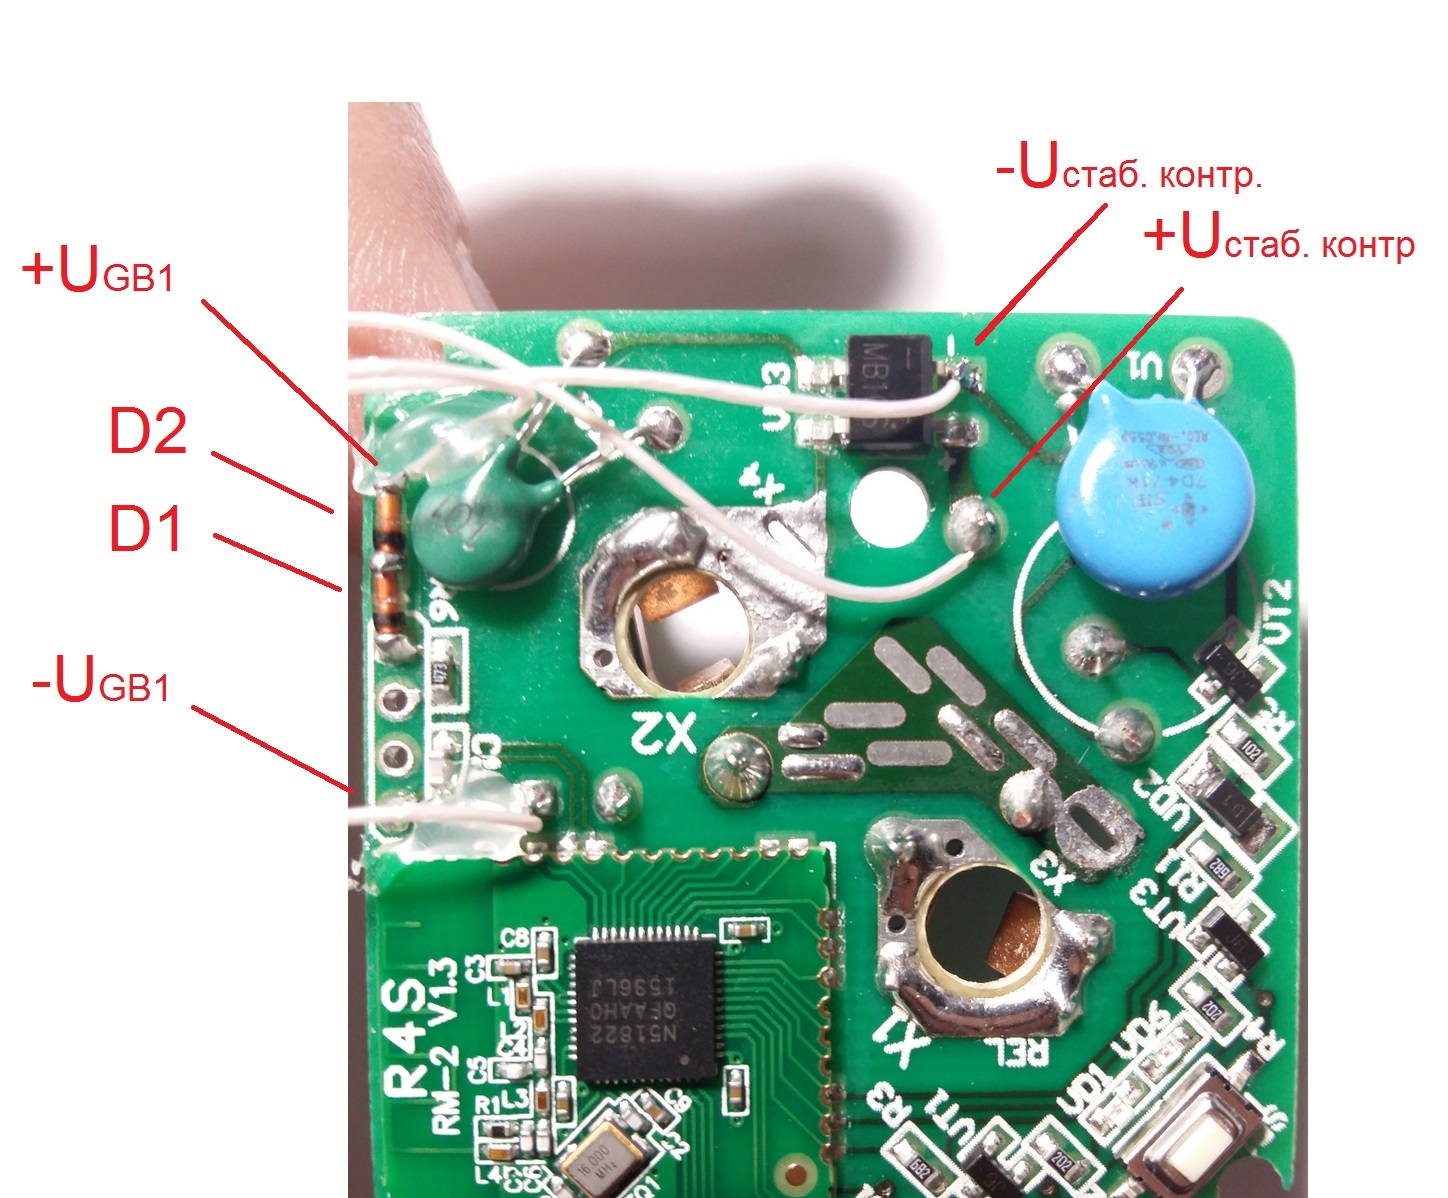 Умная розетка REDMOND Smart plug SkyPlug RSP-100S (Часть 2). Главный недостаток розетки и его устранение - 10